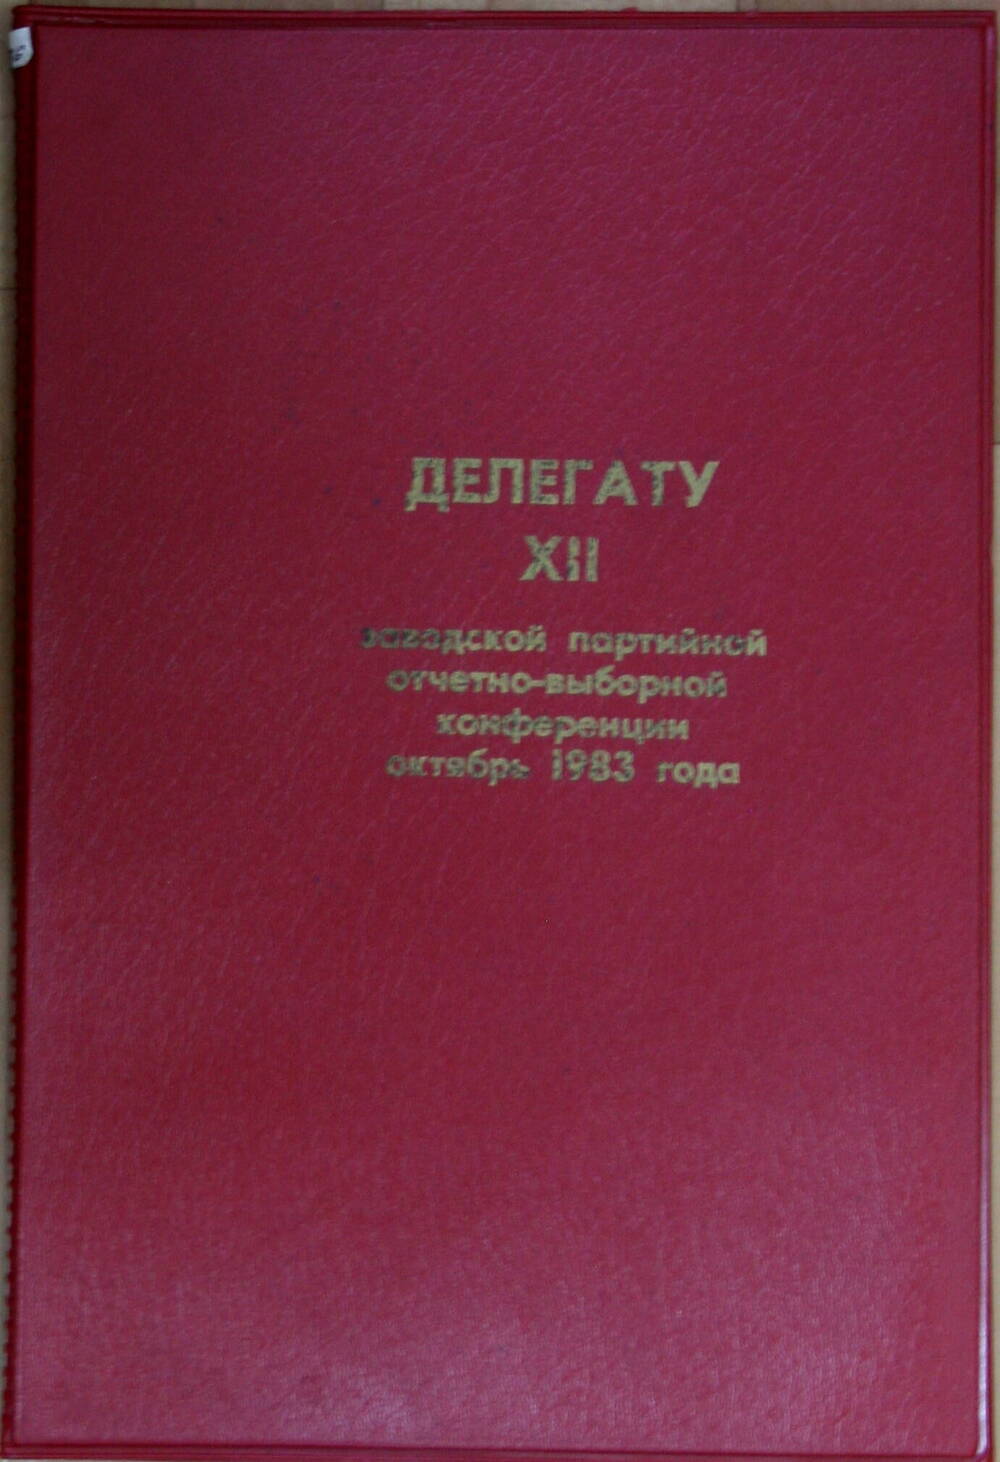 Папка Делегату XII заводской партийной отчетно-выборной конференции Махлина А.Я.